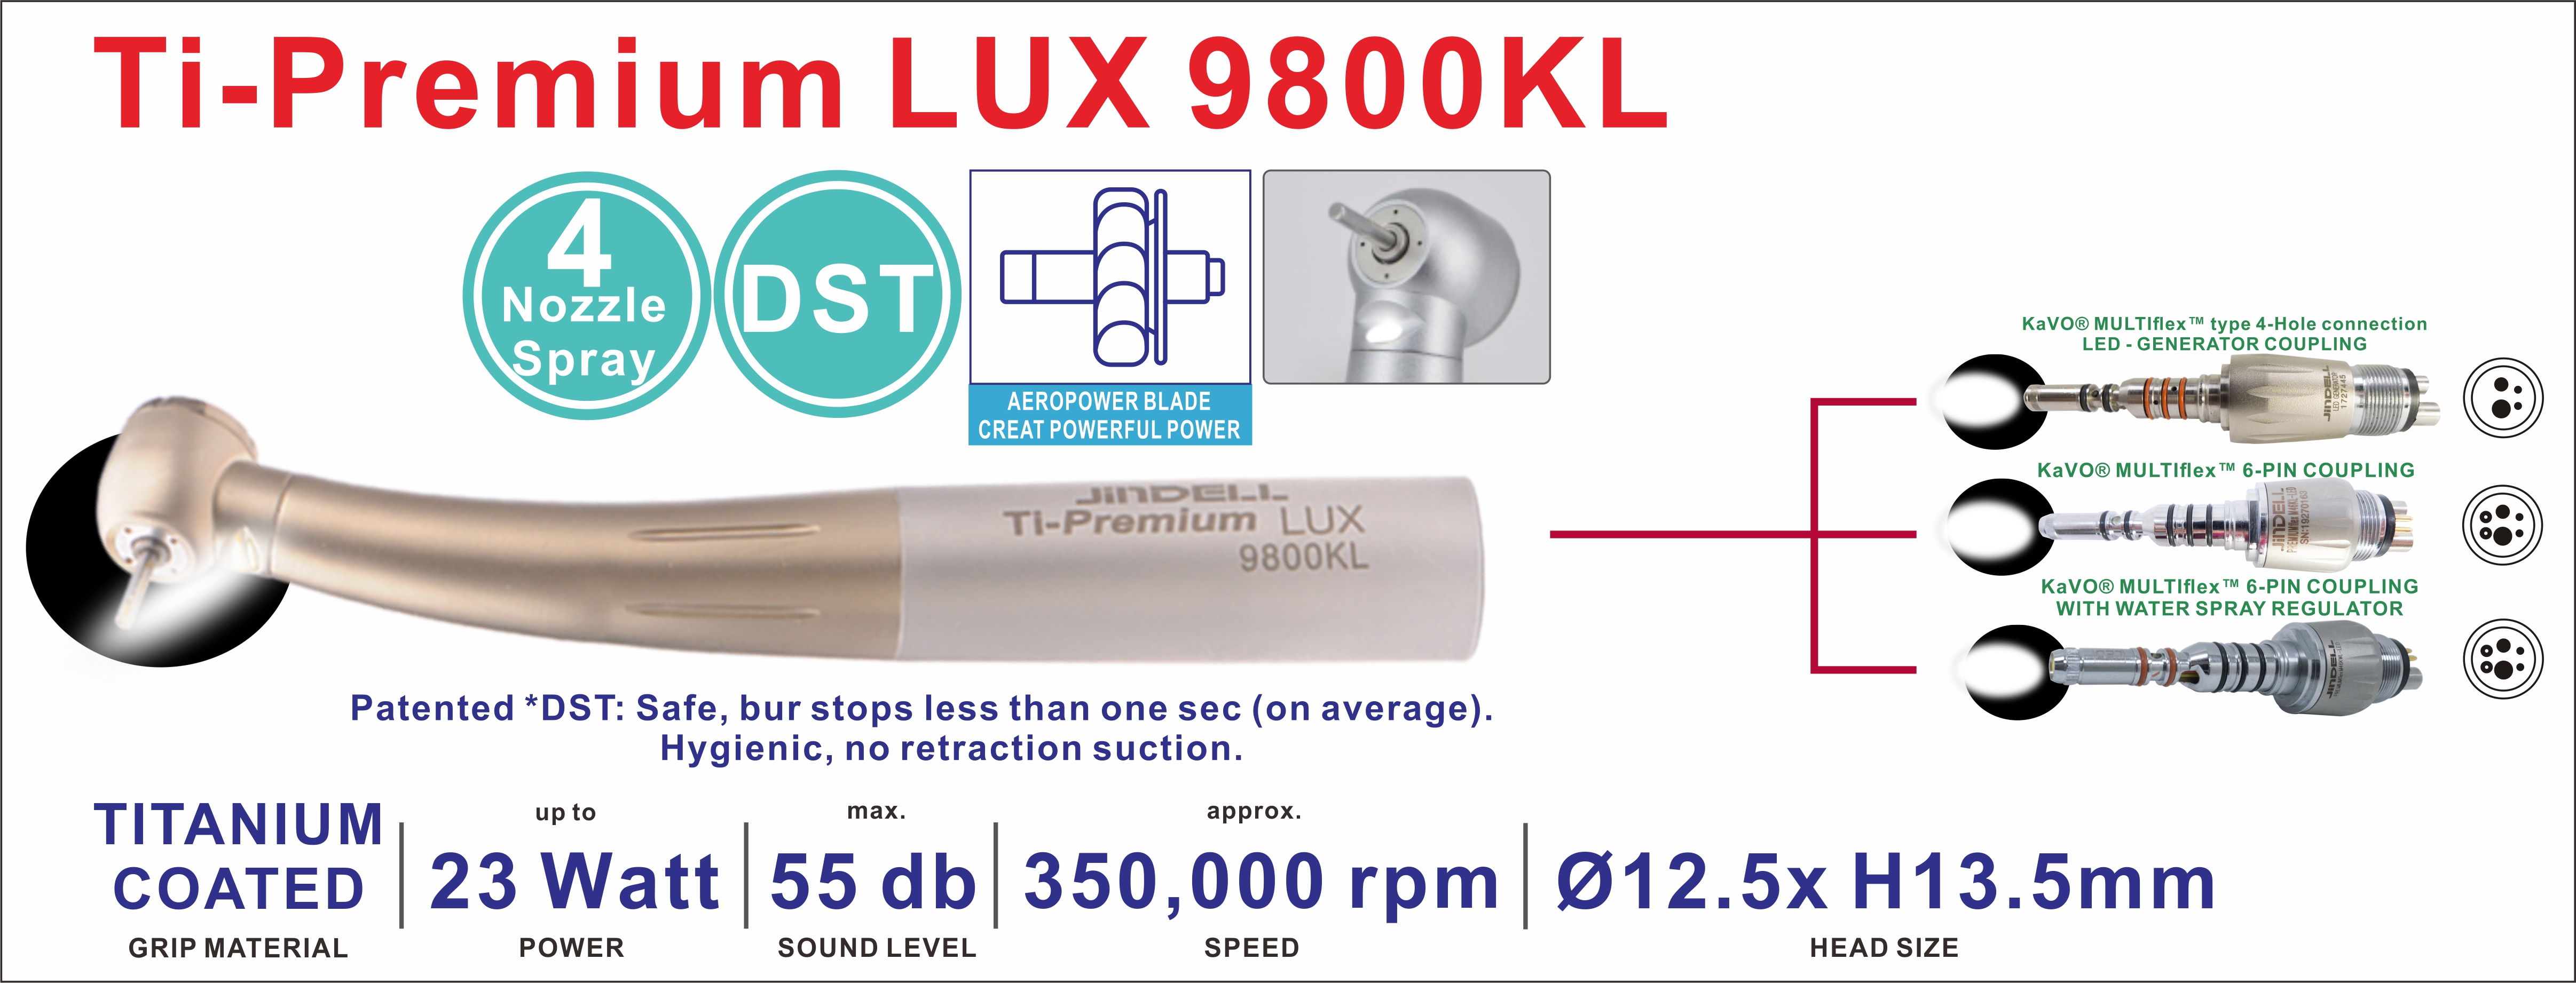 Ti-Premium LUX 9800KL